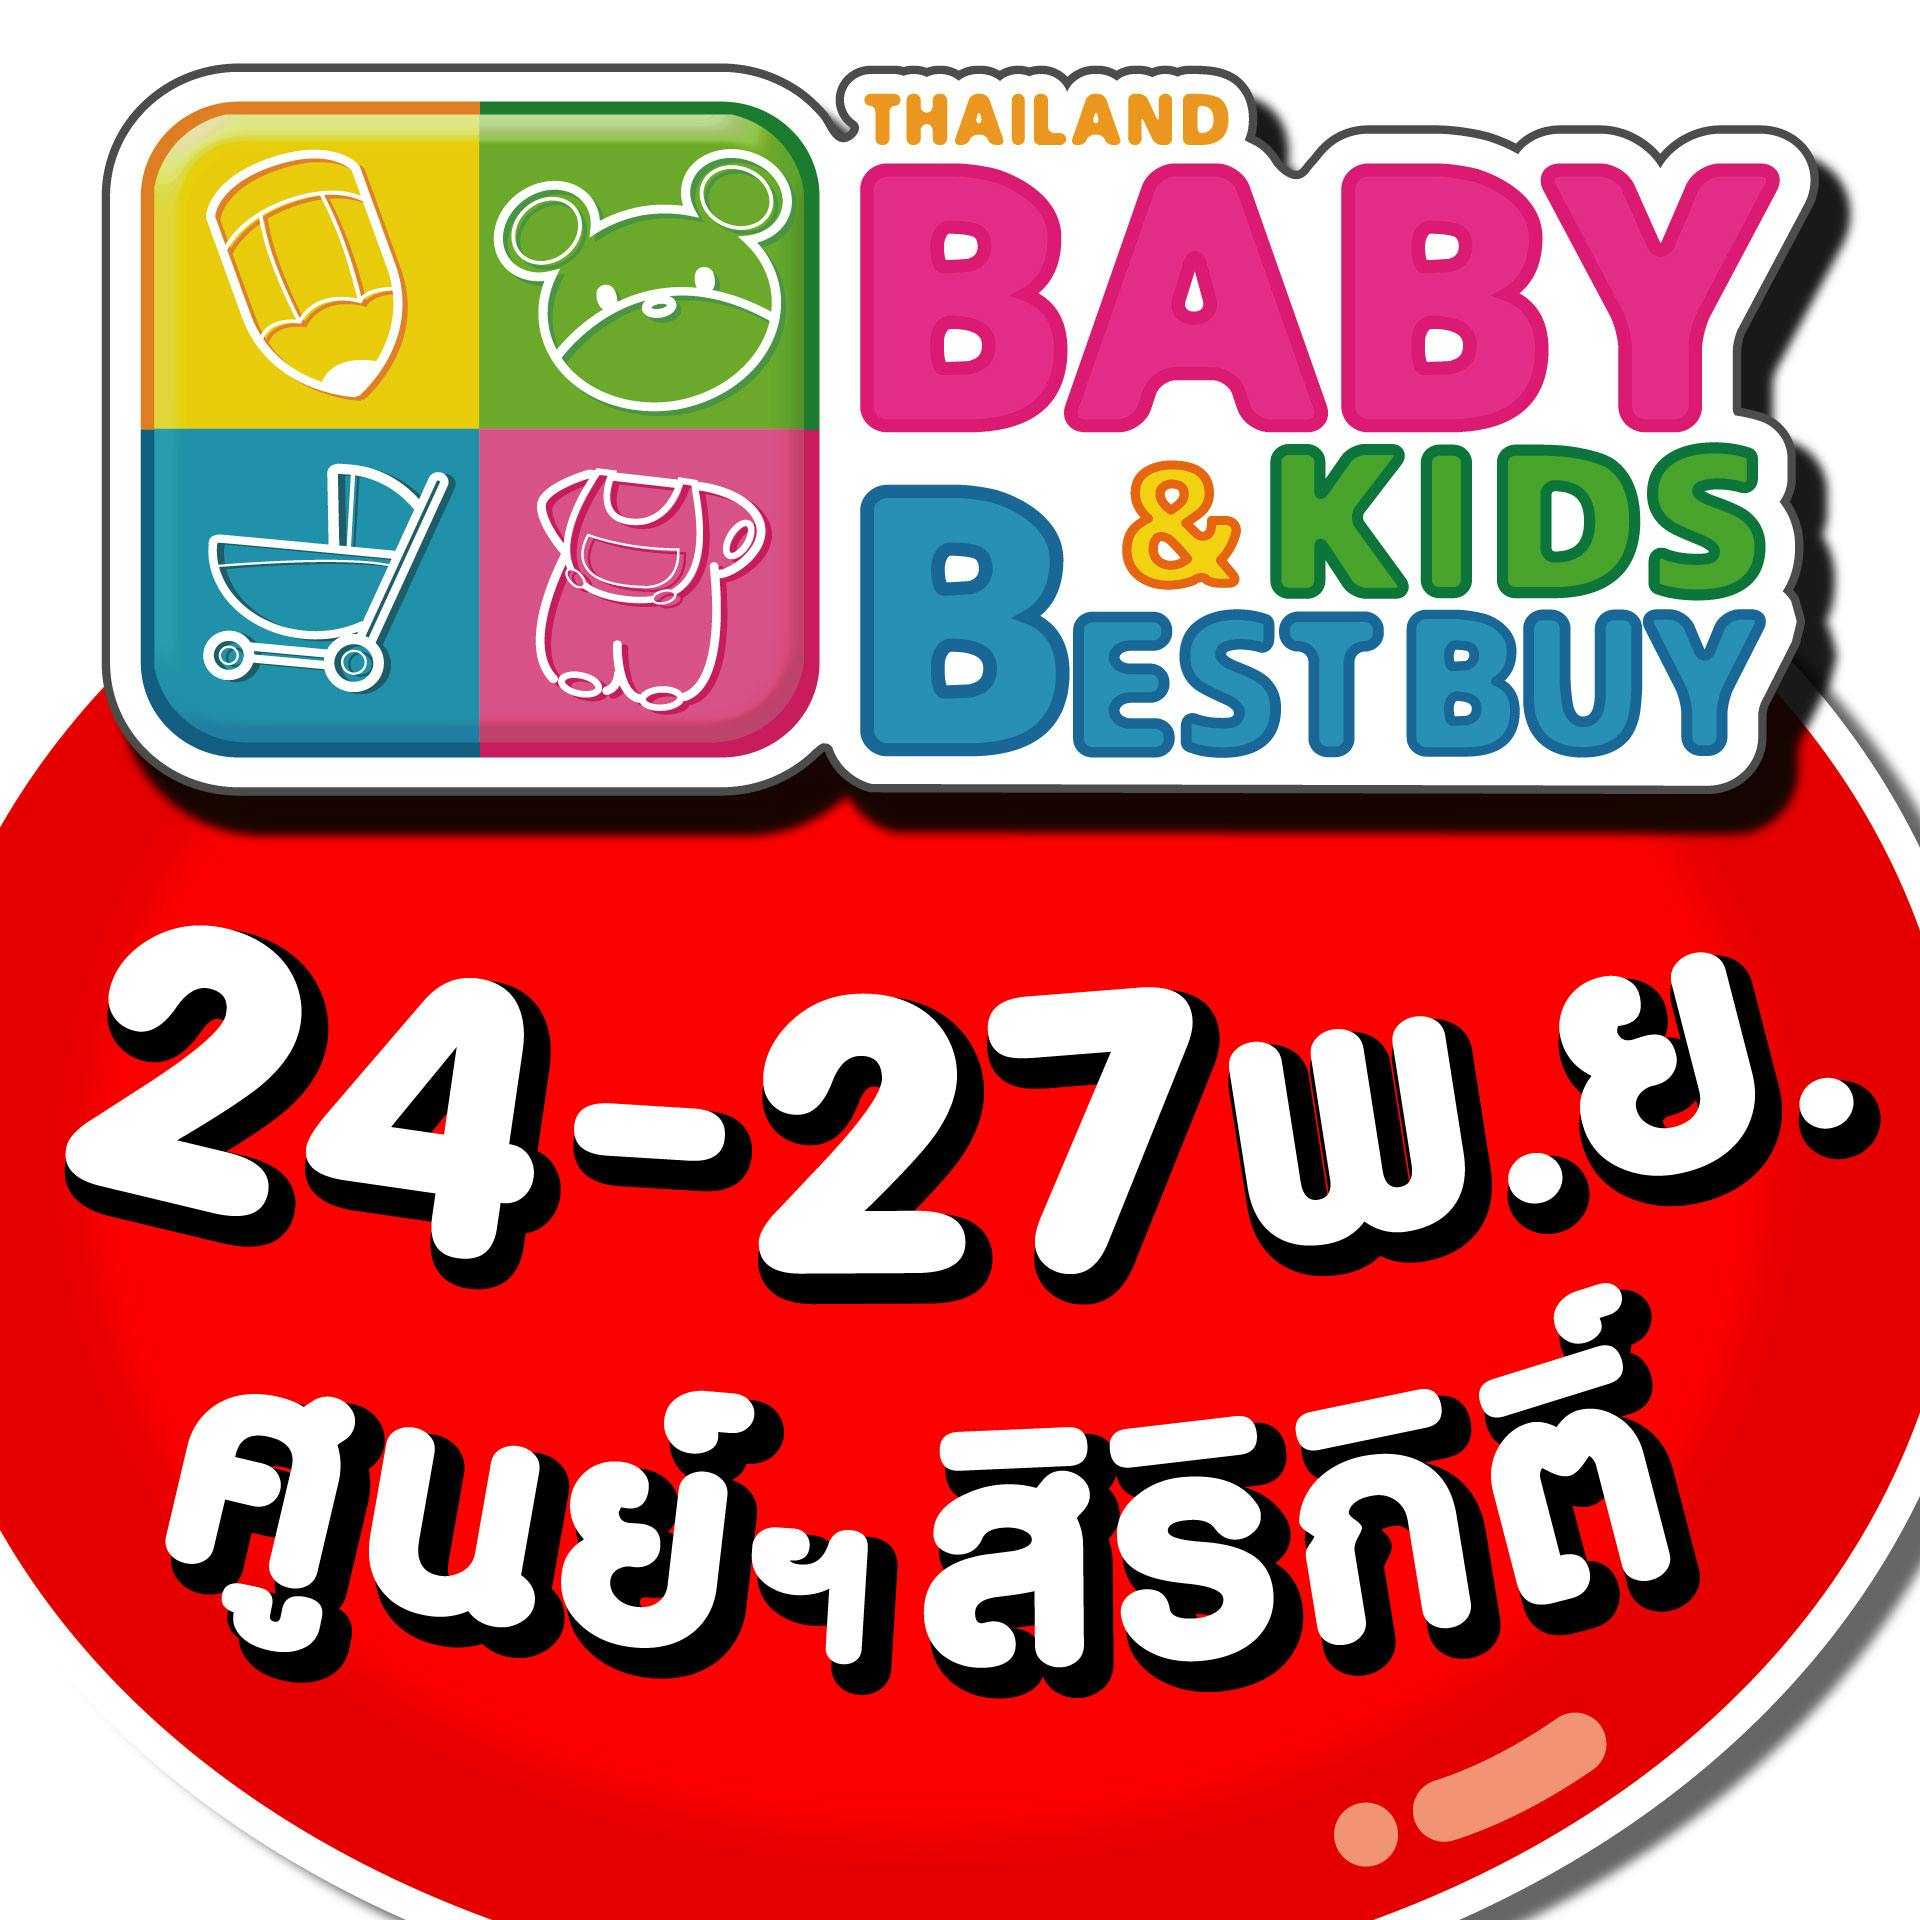 Thailand Baby & Kids Best Buy 44th